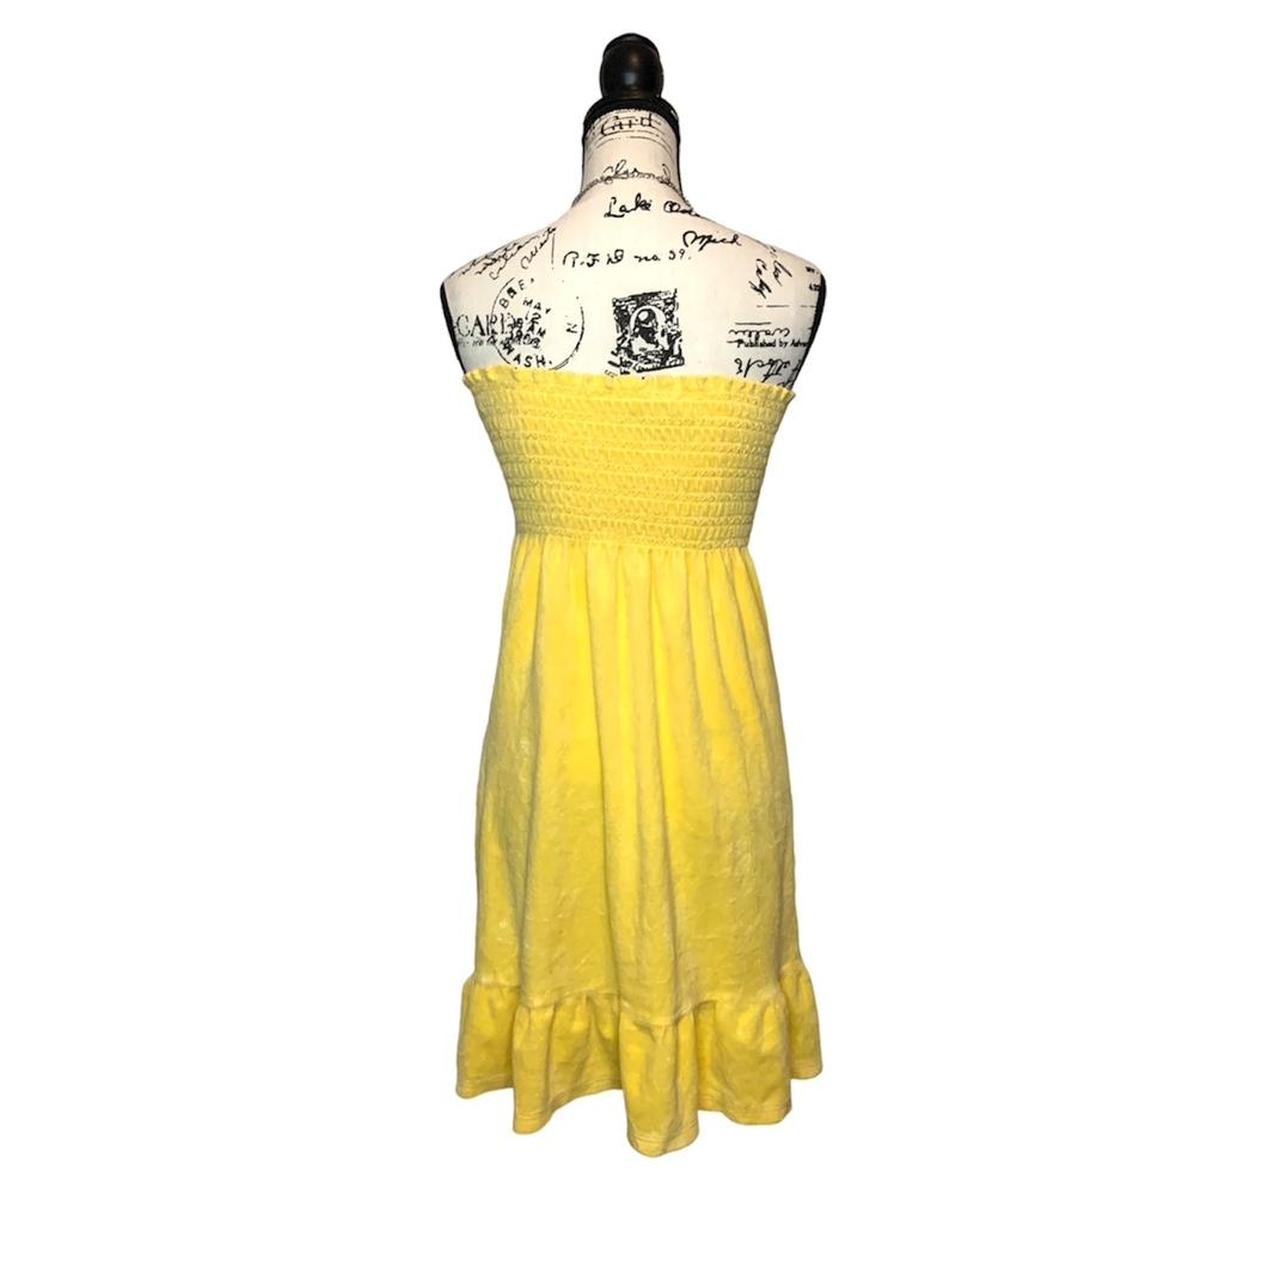 Yellow dress Dress up Never worn Size 3xl - Depop